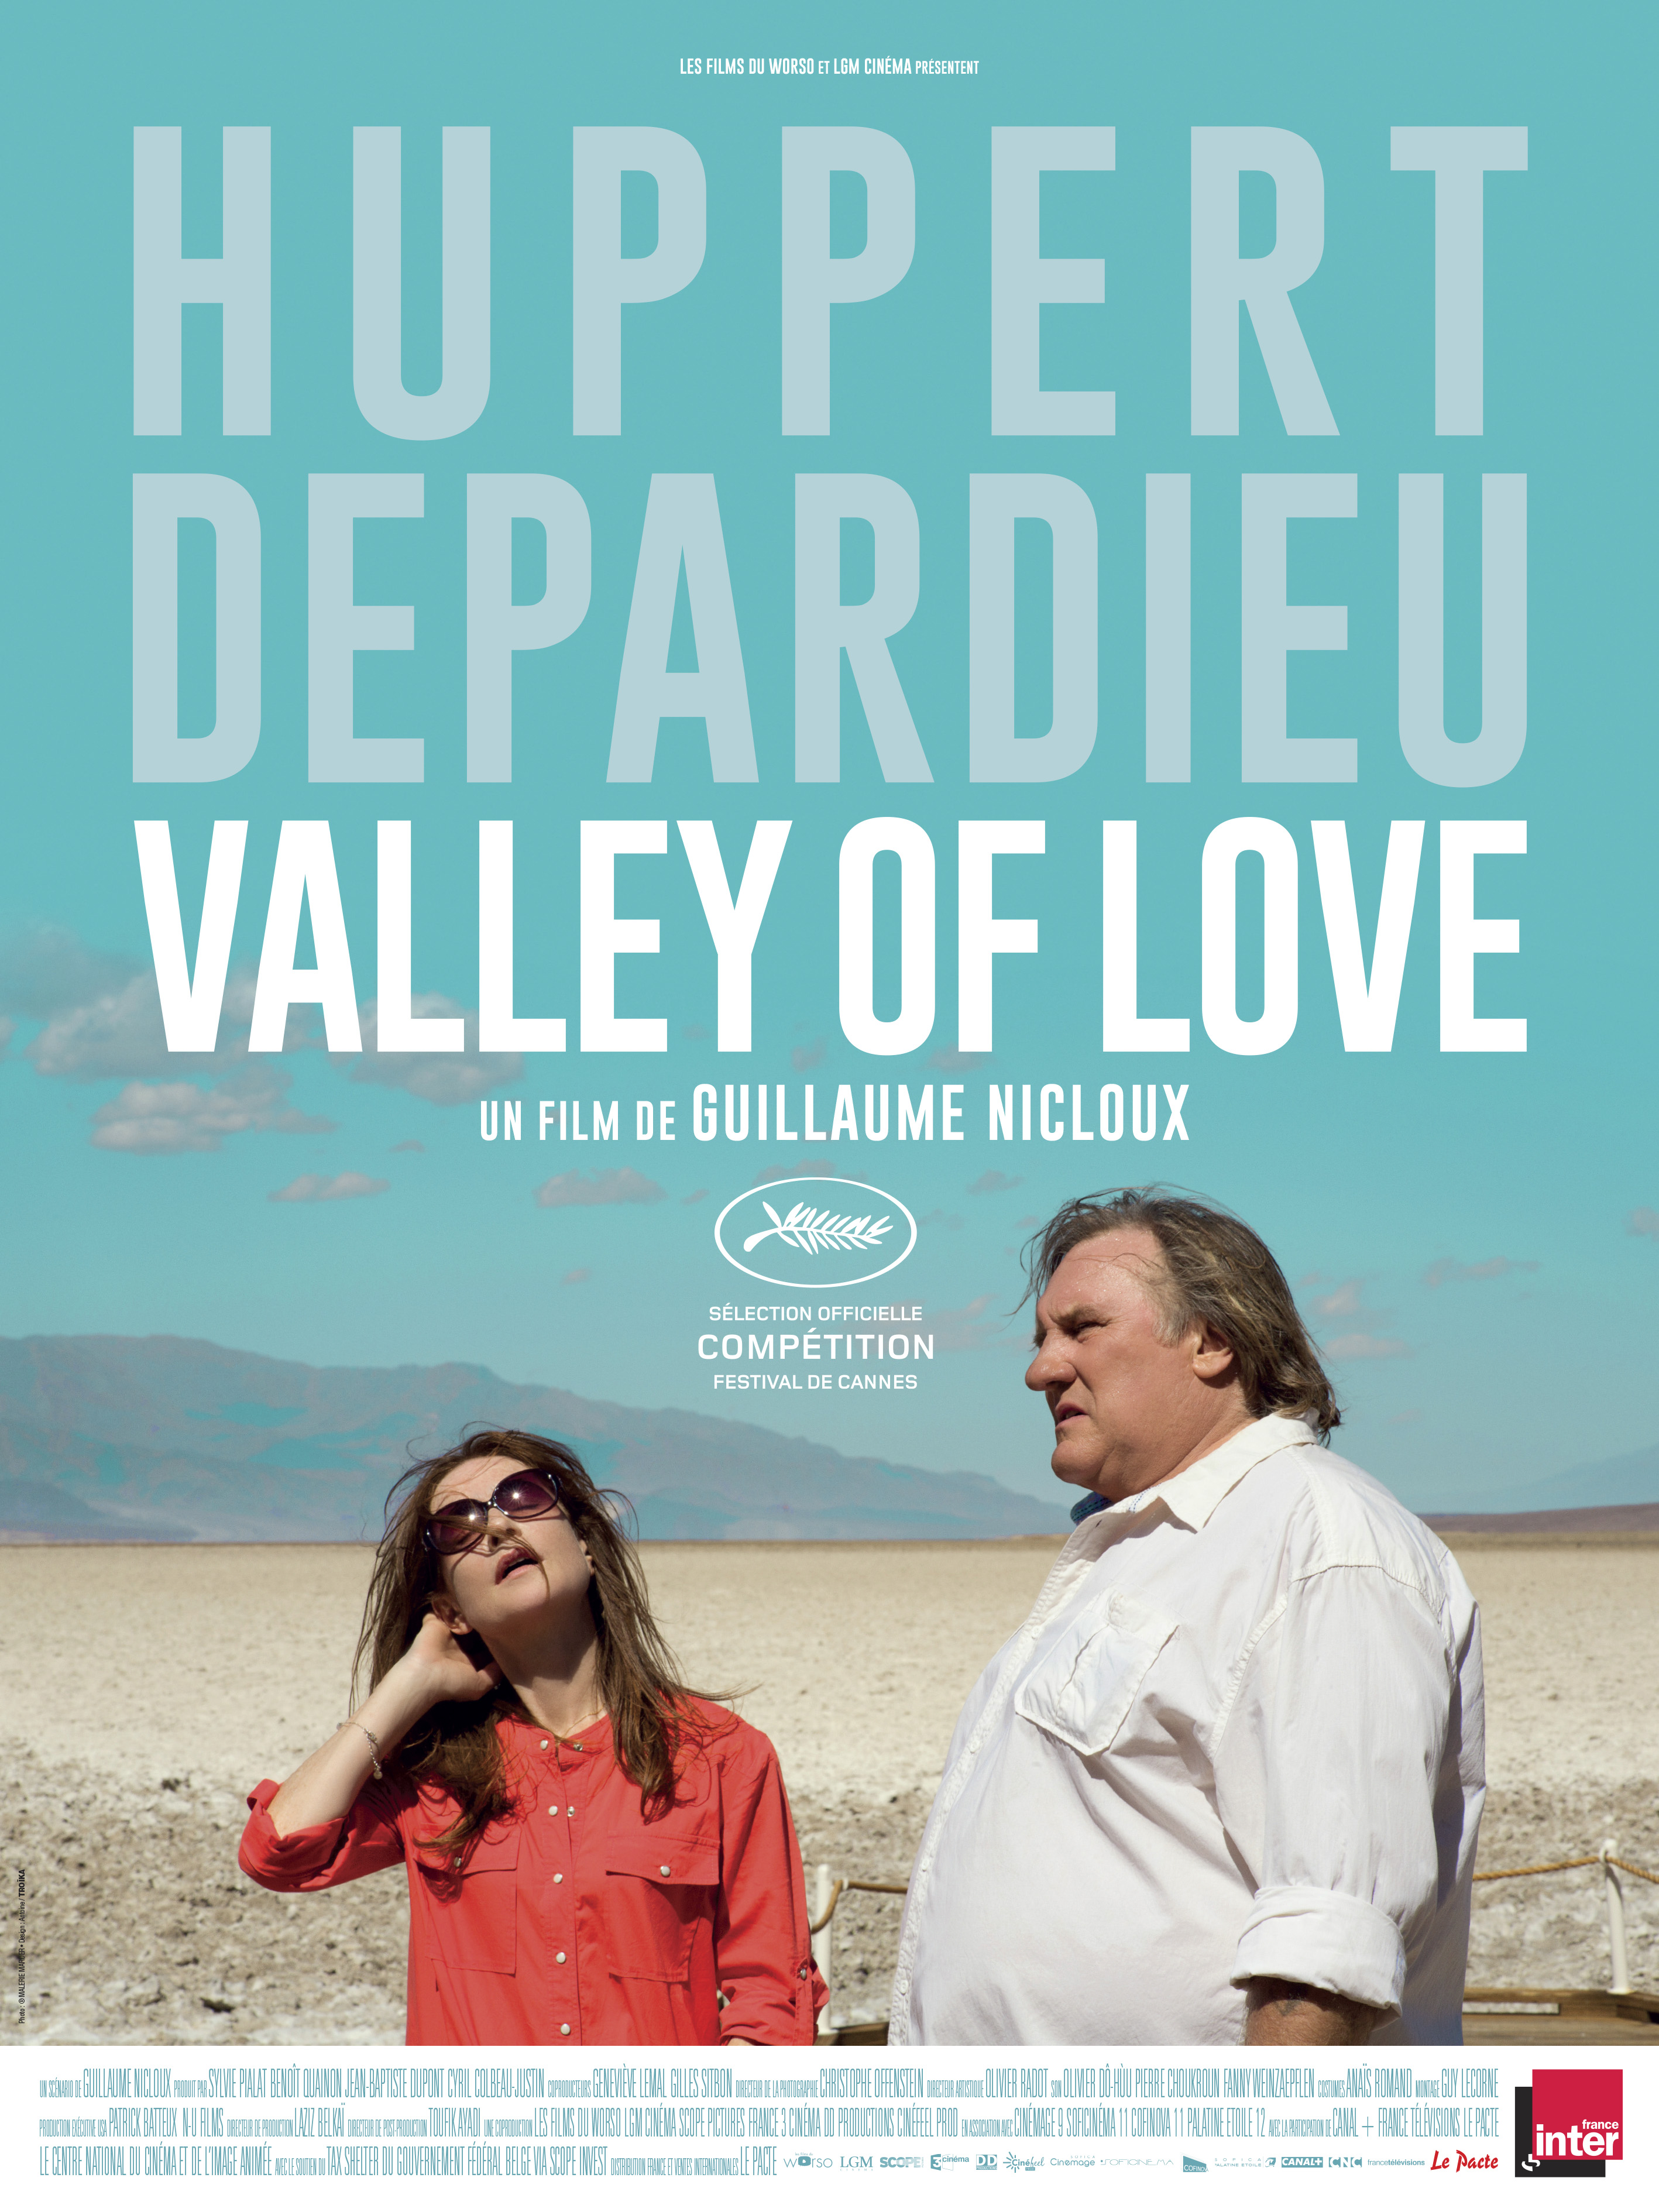 Résultats concours : Valley of love, 30 places de ciné gagnées.